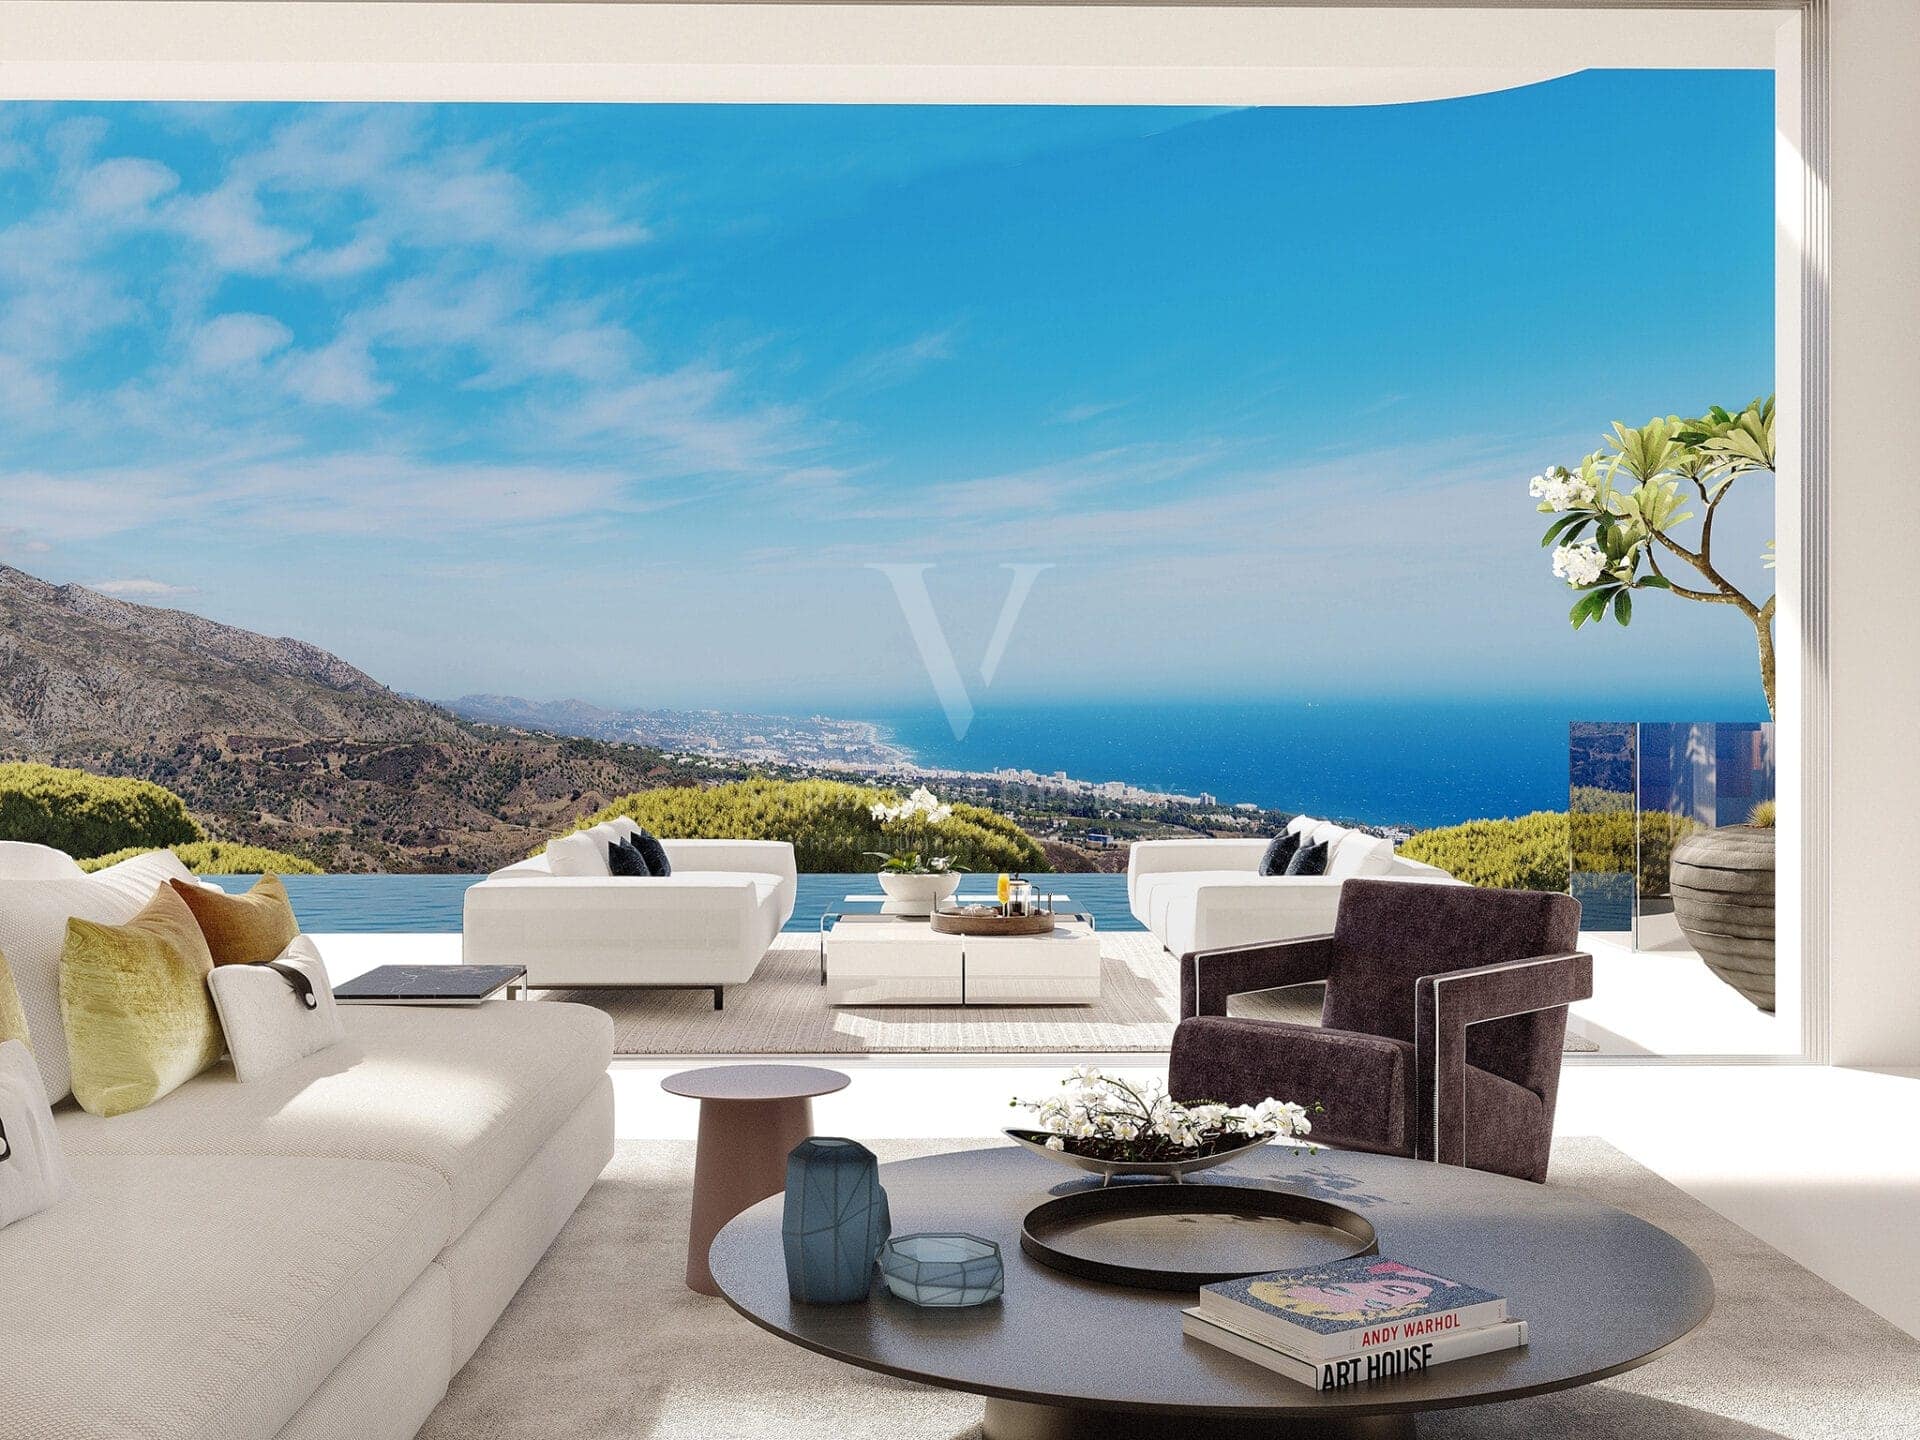 Vista Lago Residences - Verdin Property - Nouveau développement Marbella